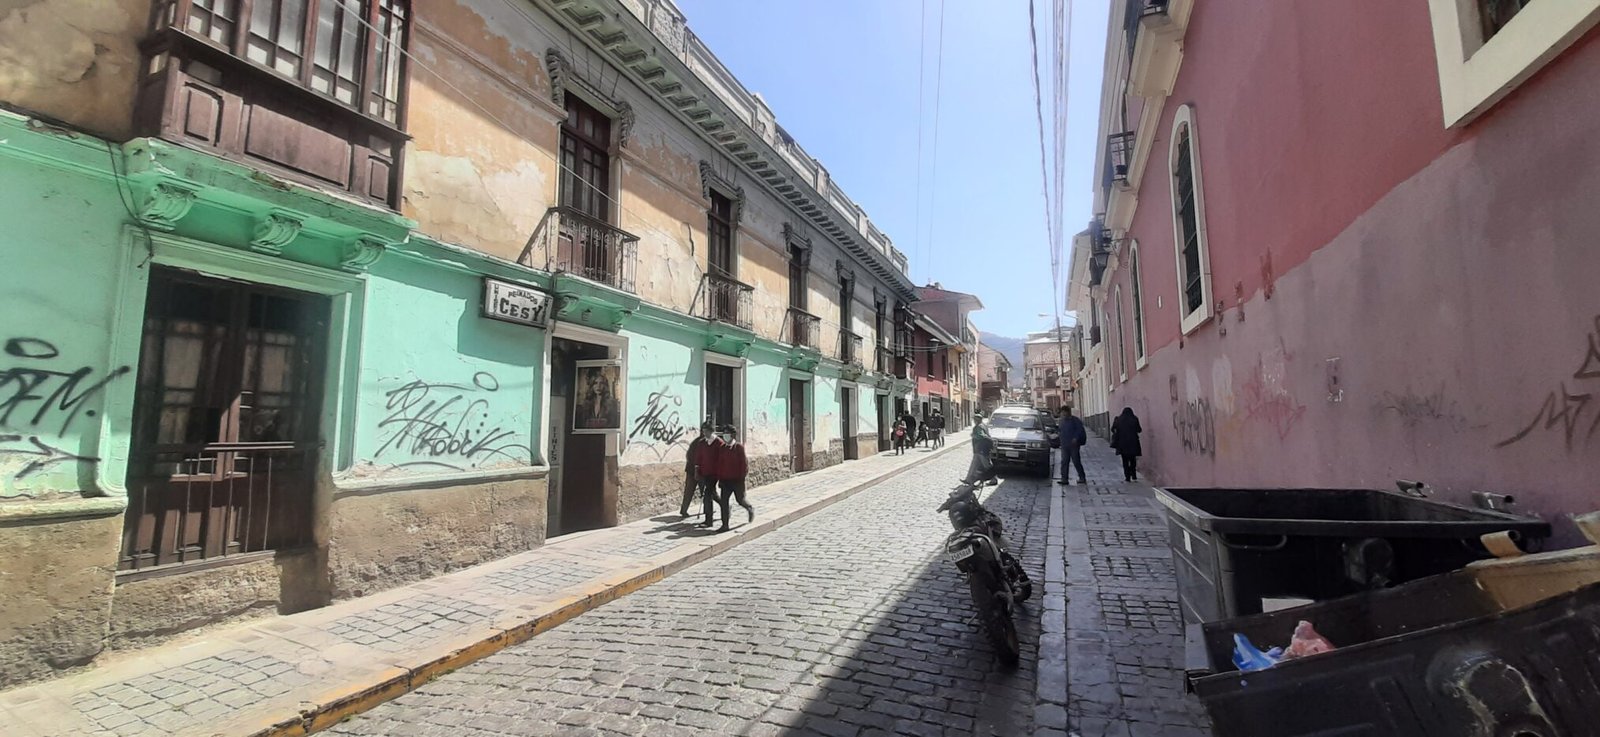 Casas coloniales dentro del centro histórico de La Paz, Bolivia